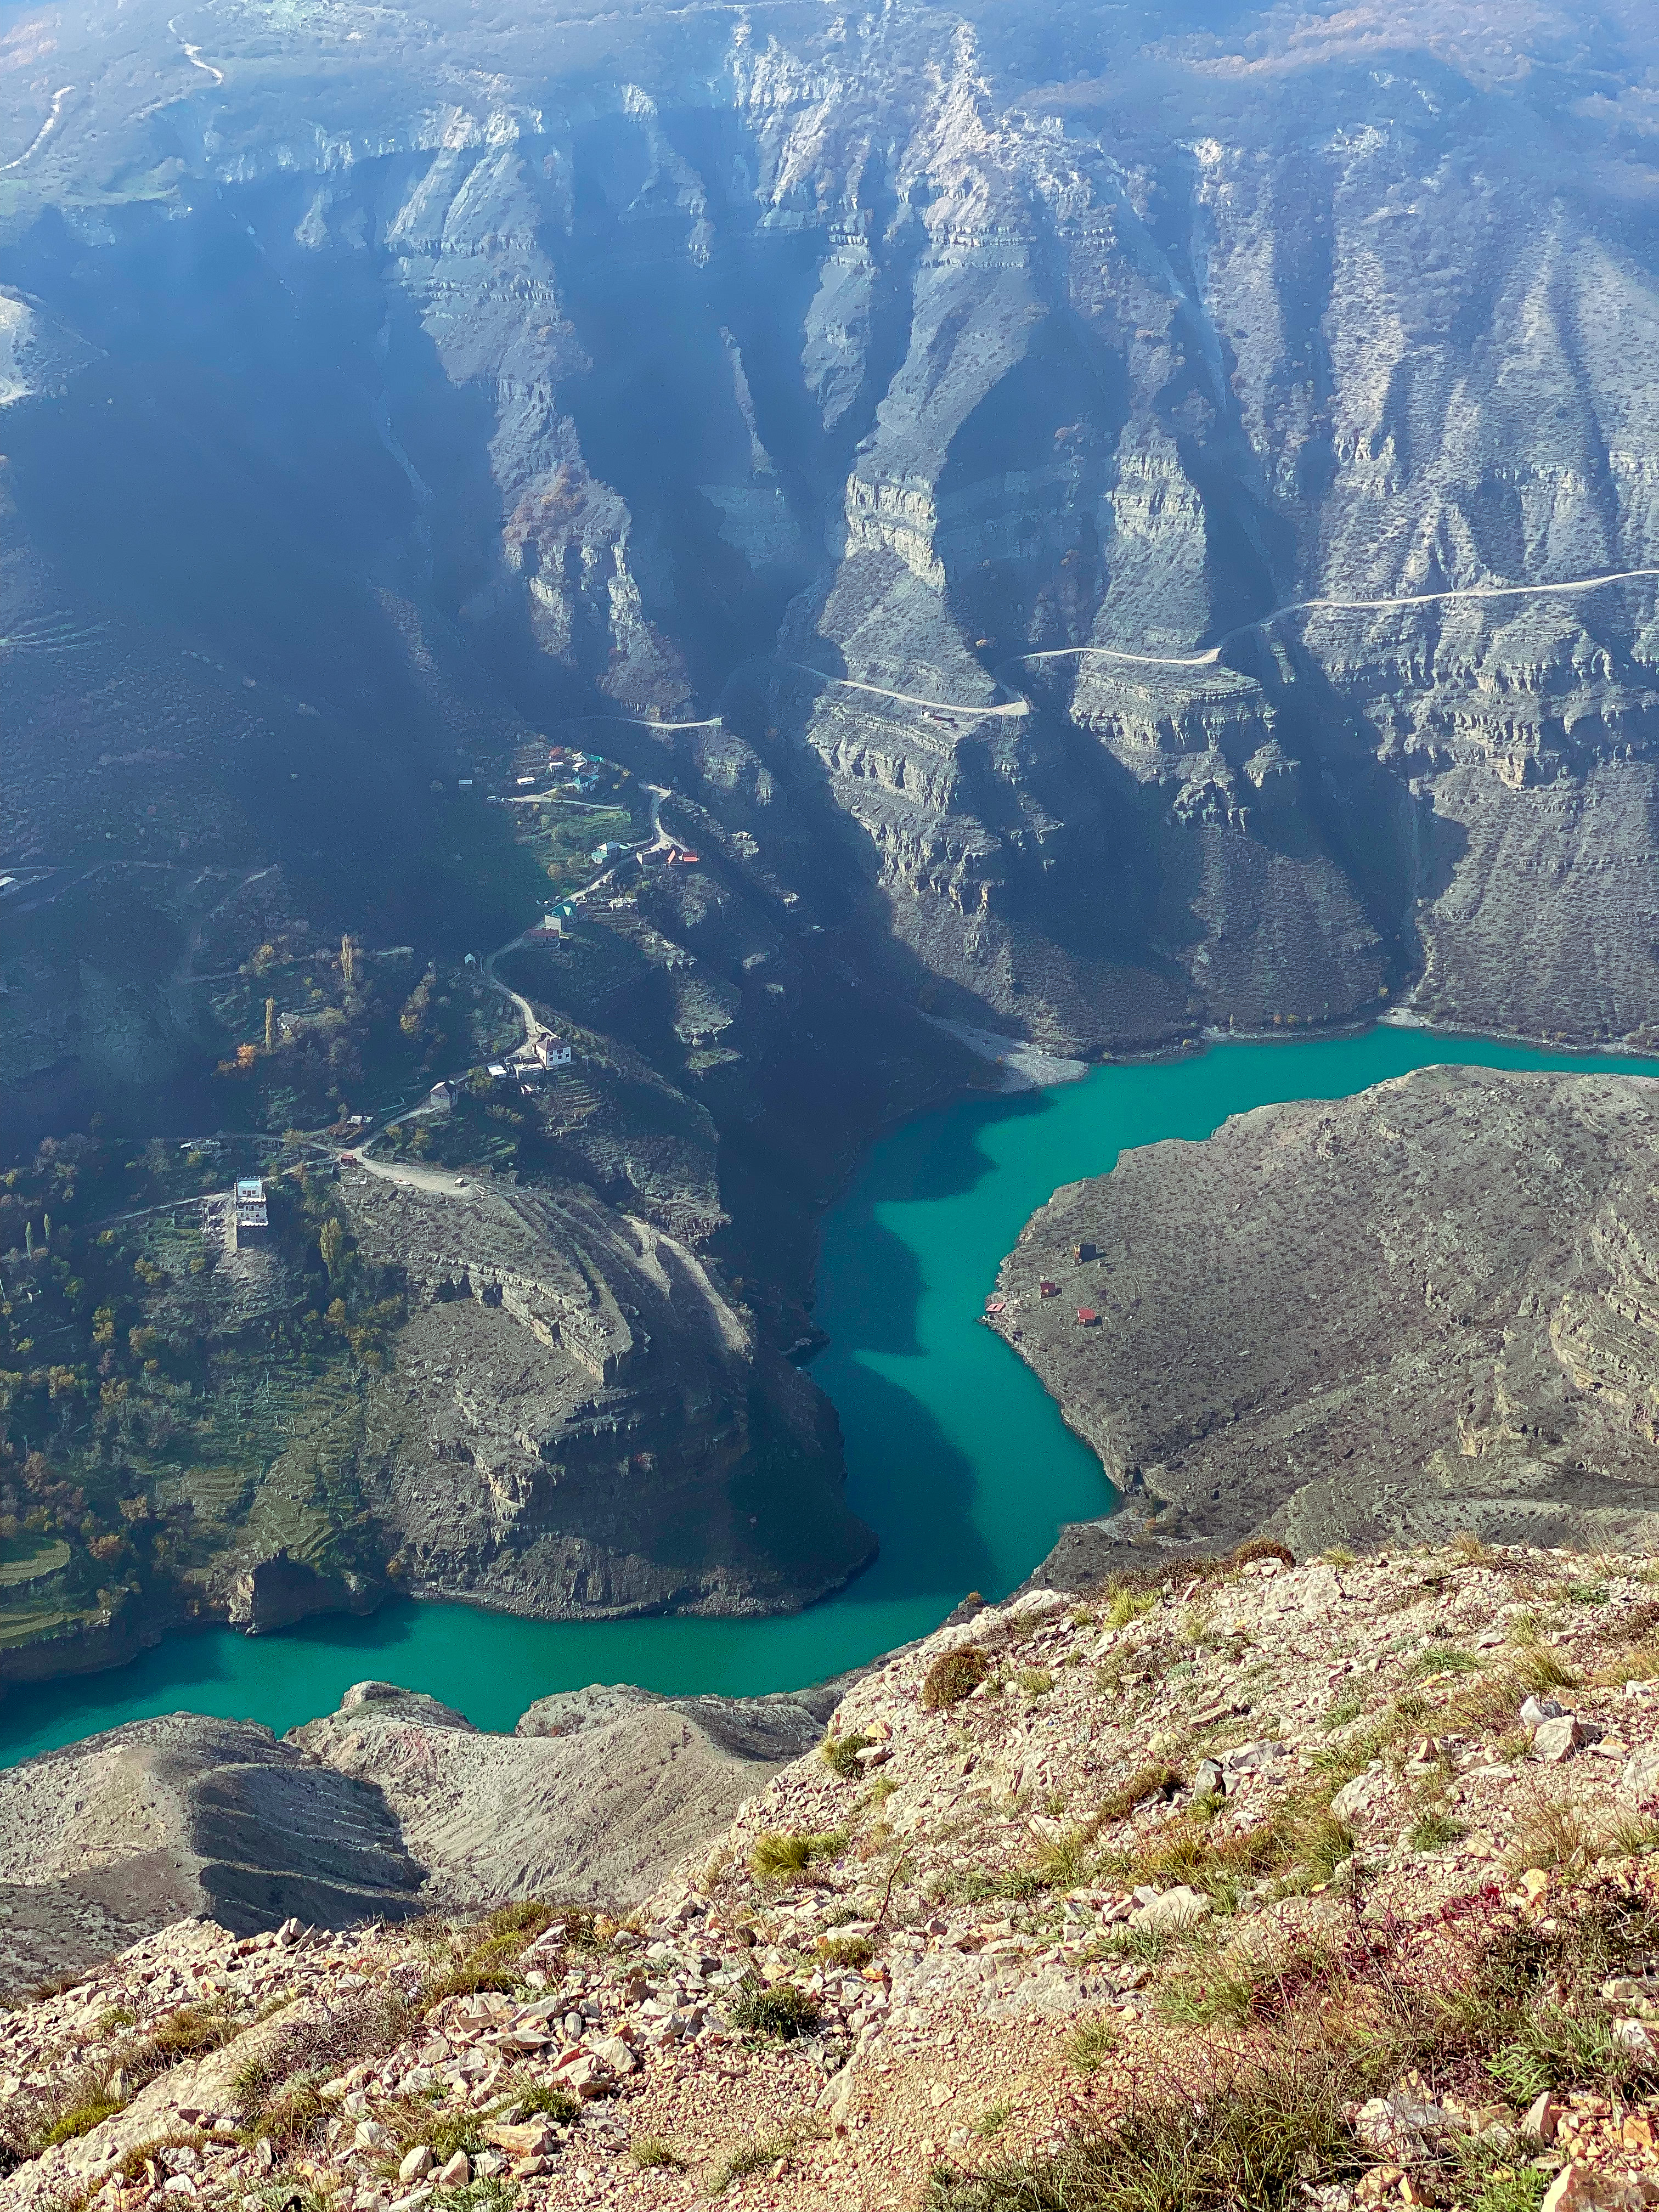 Тур в горный Дагестан - все самое интересное за 4 дня | цены на тур